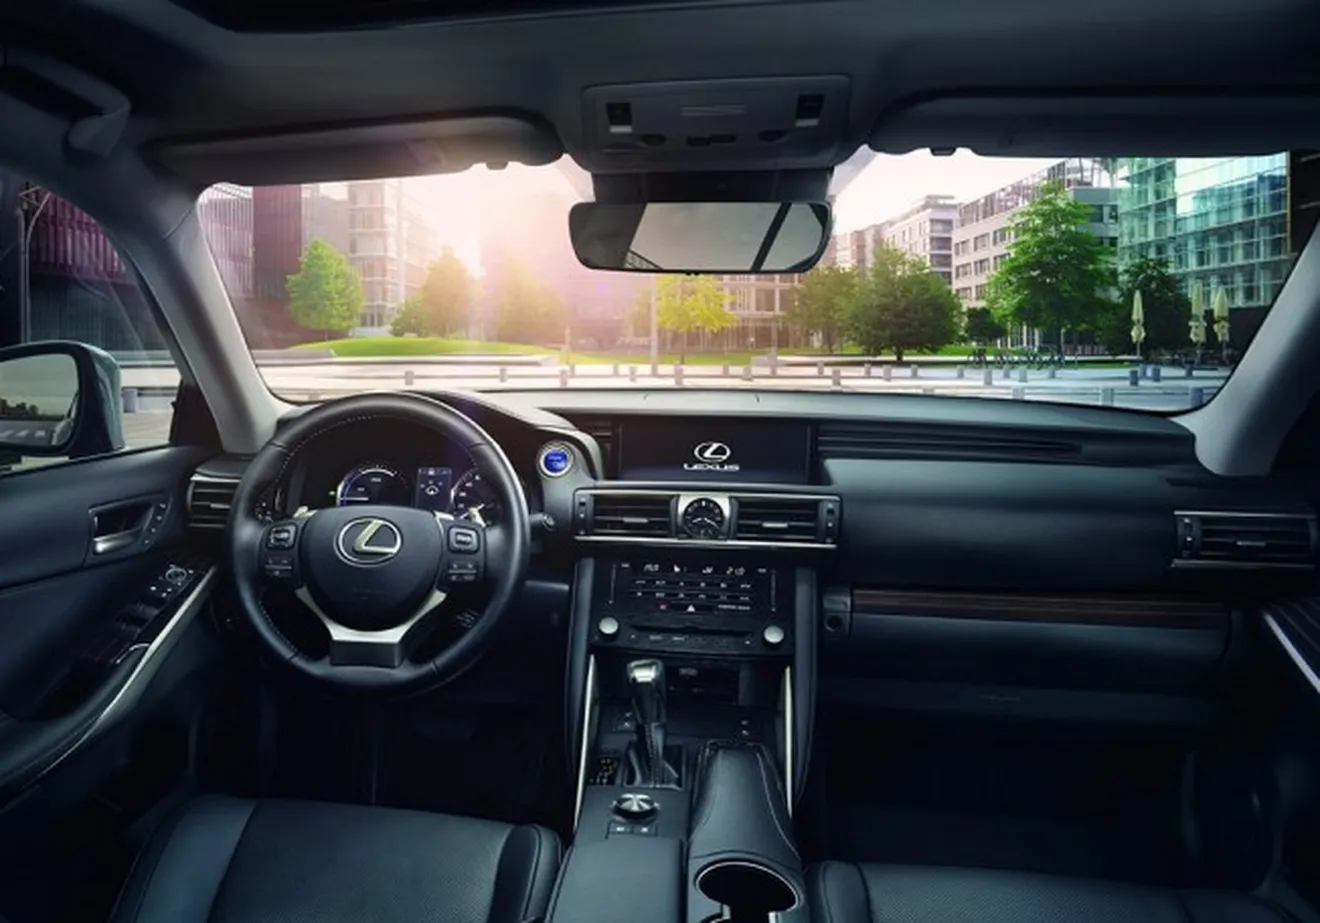 Lexus IS 2017 - interior